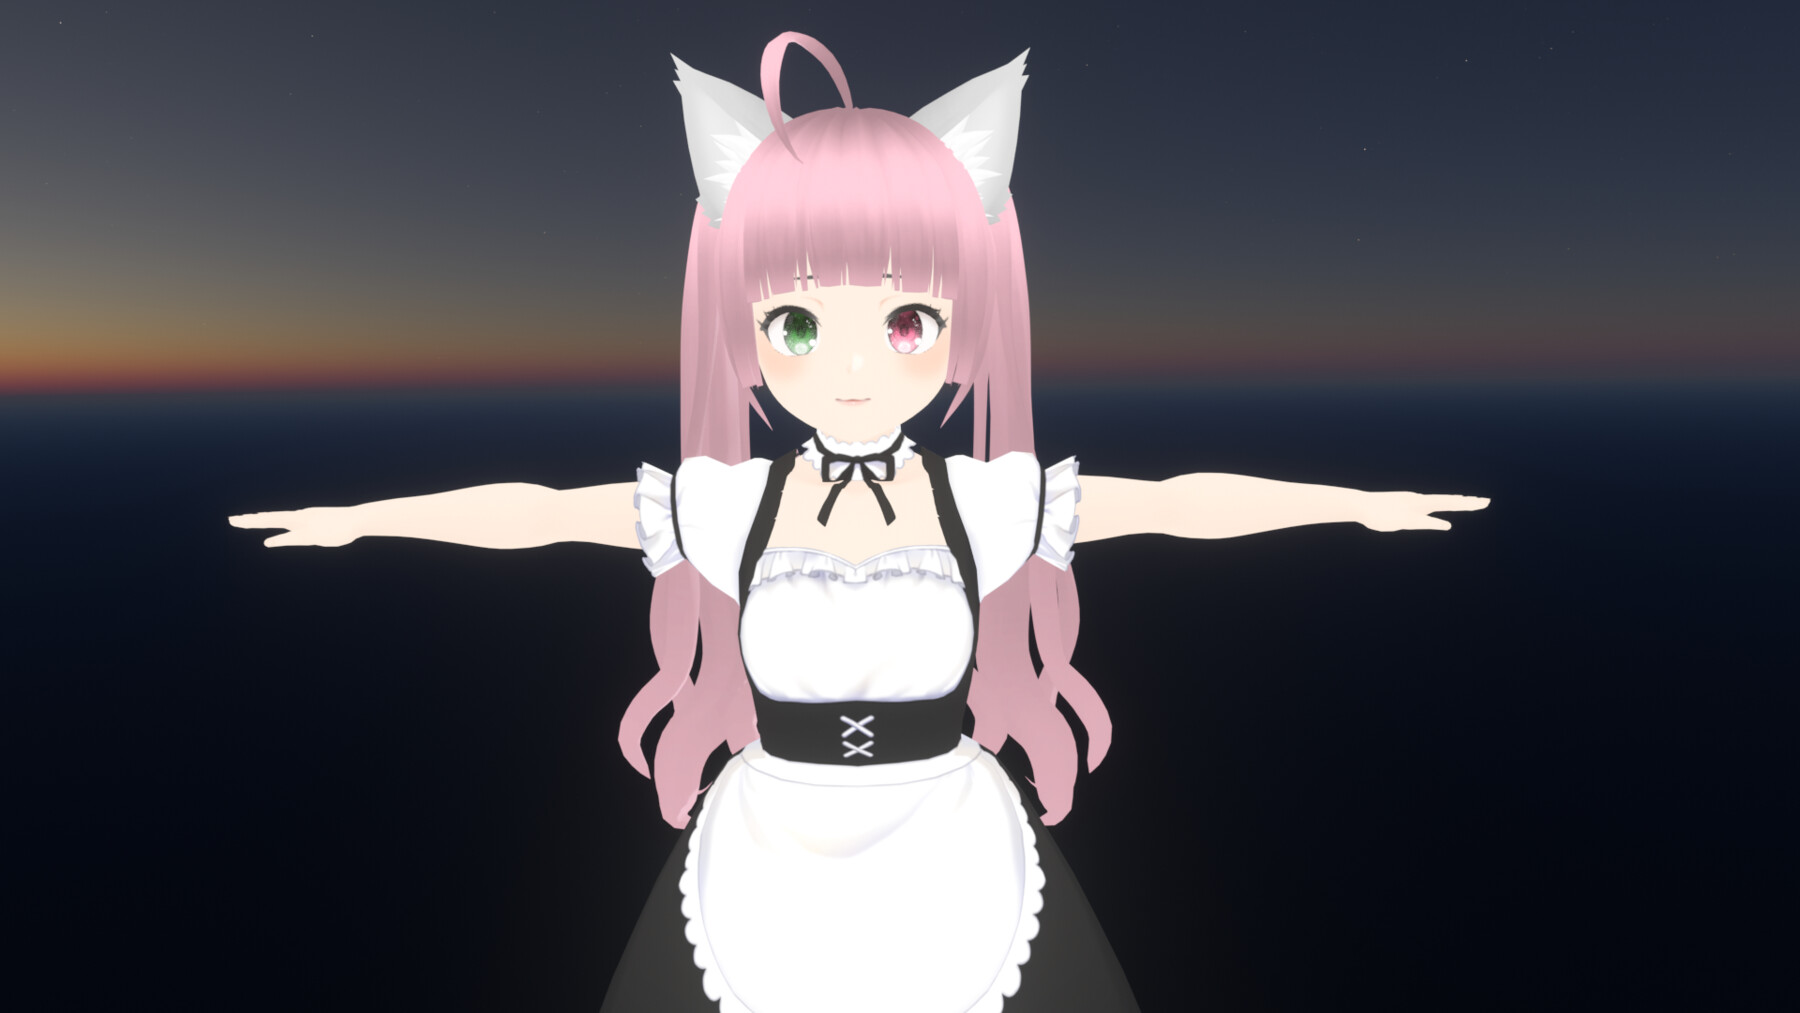 Cute anime girl VRChat avatar creation:
Bước vào thế giới VRChat và trở thành một cô gái anime dễ thương với khả năng tạo avatar vô cùng đa dạng! Tự tay thiết kế trang phục và khuôn mặt cho nhân vật của mình và tự hào trình diễn trước cộng đồng chơi game.